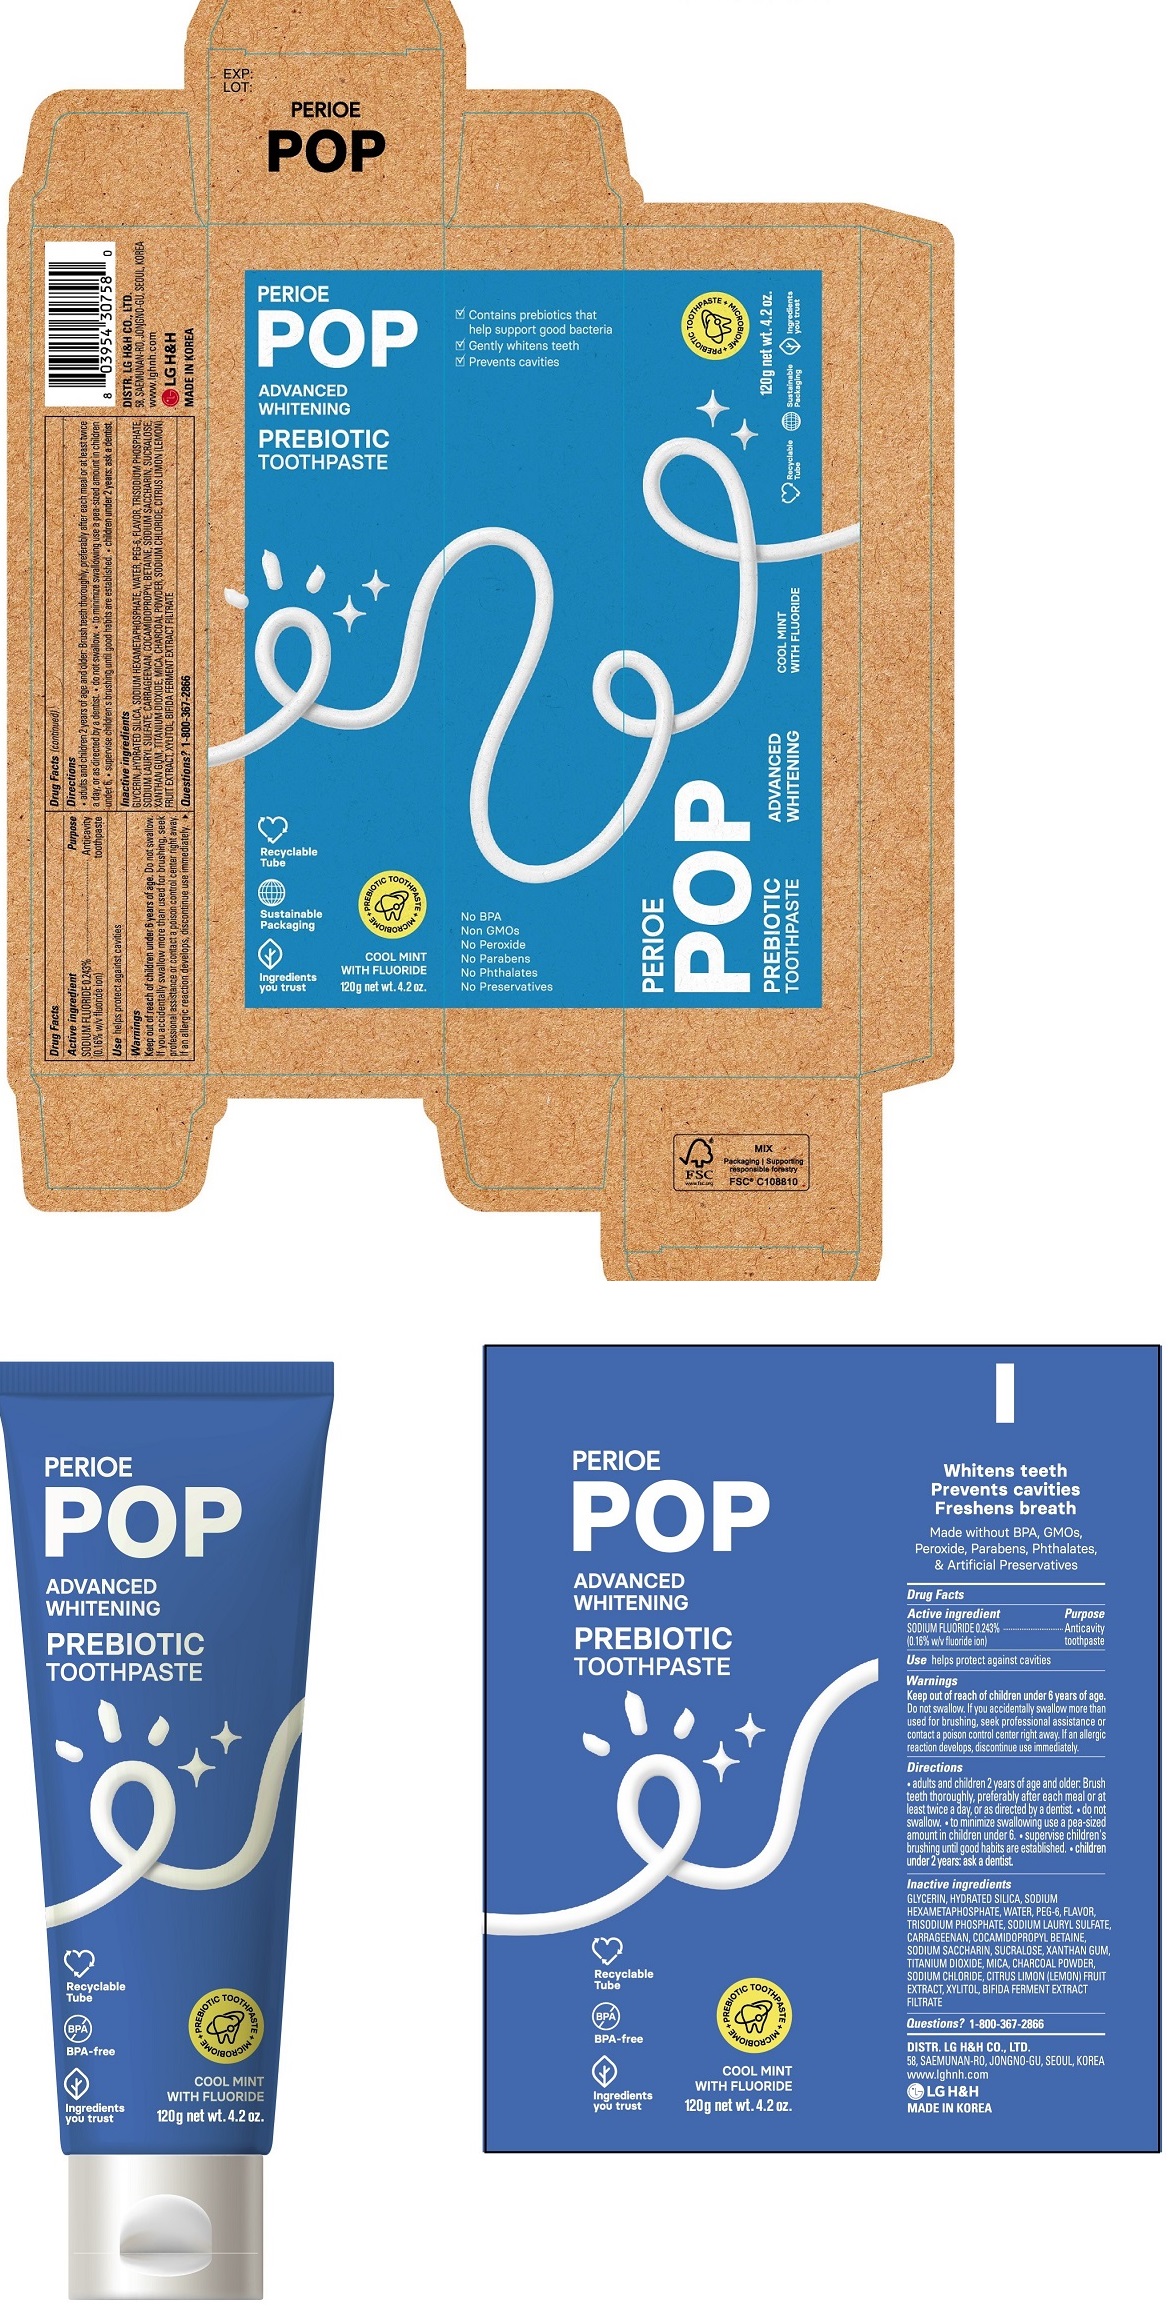 Perioe pop advanced whitening prebiotic toothpaste